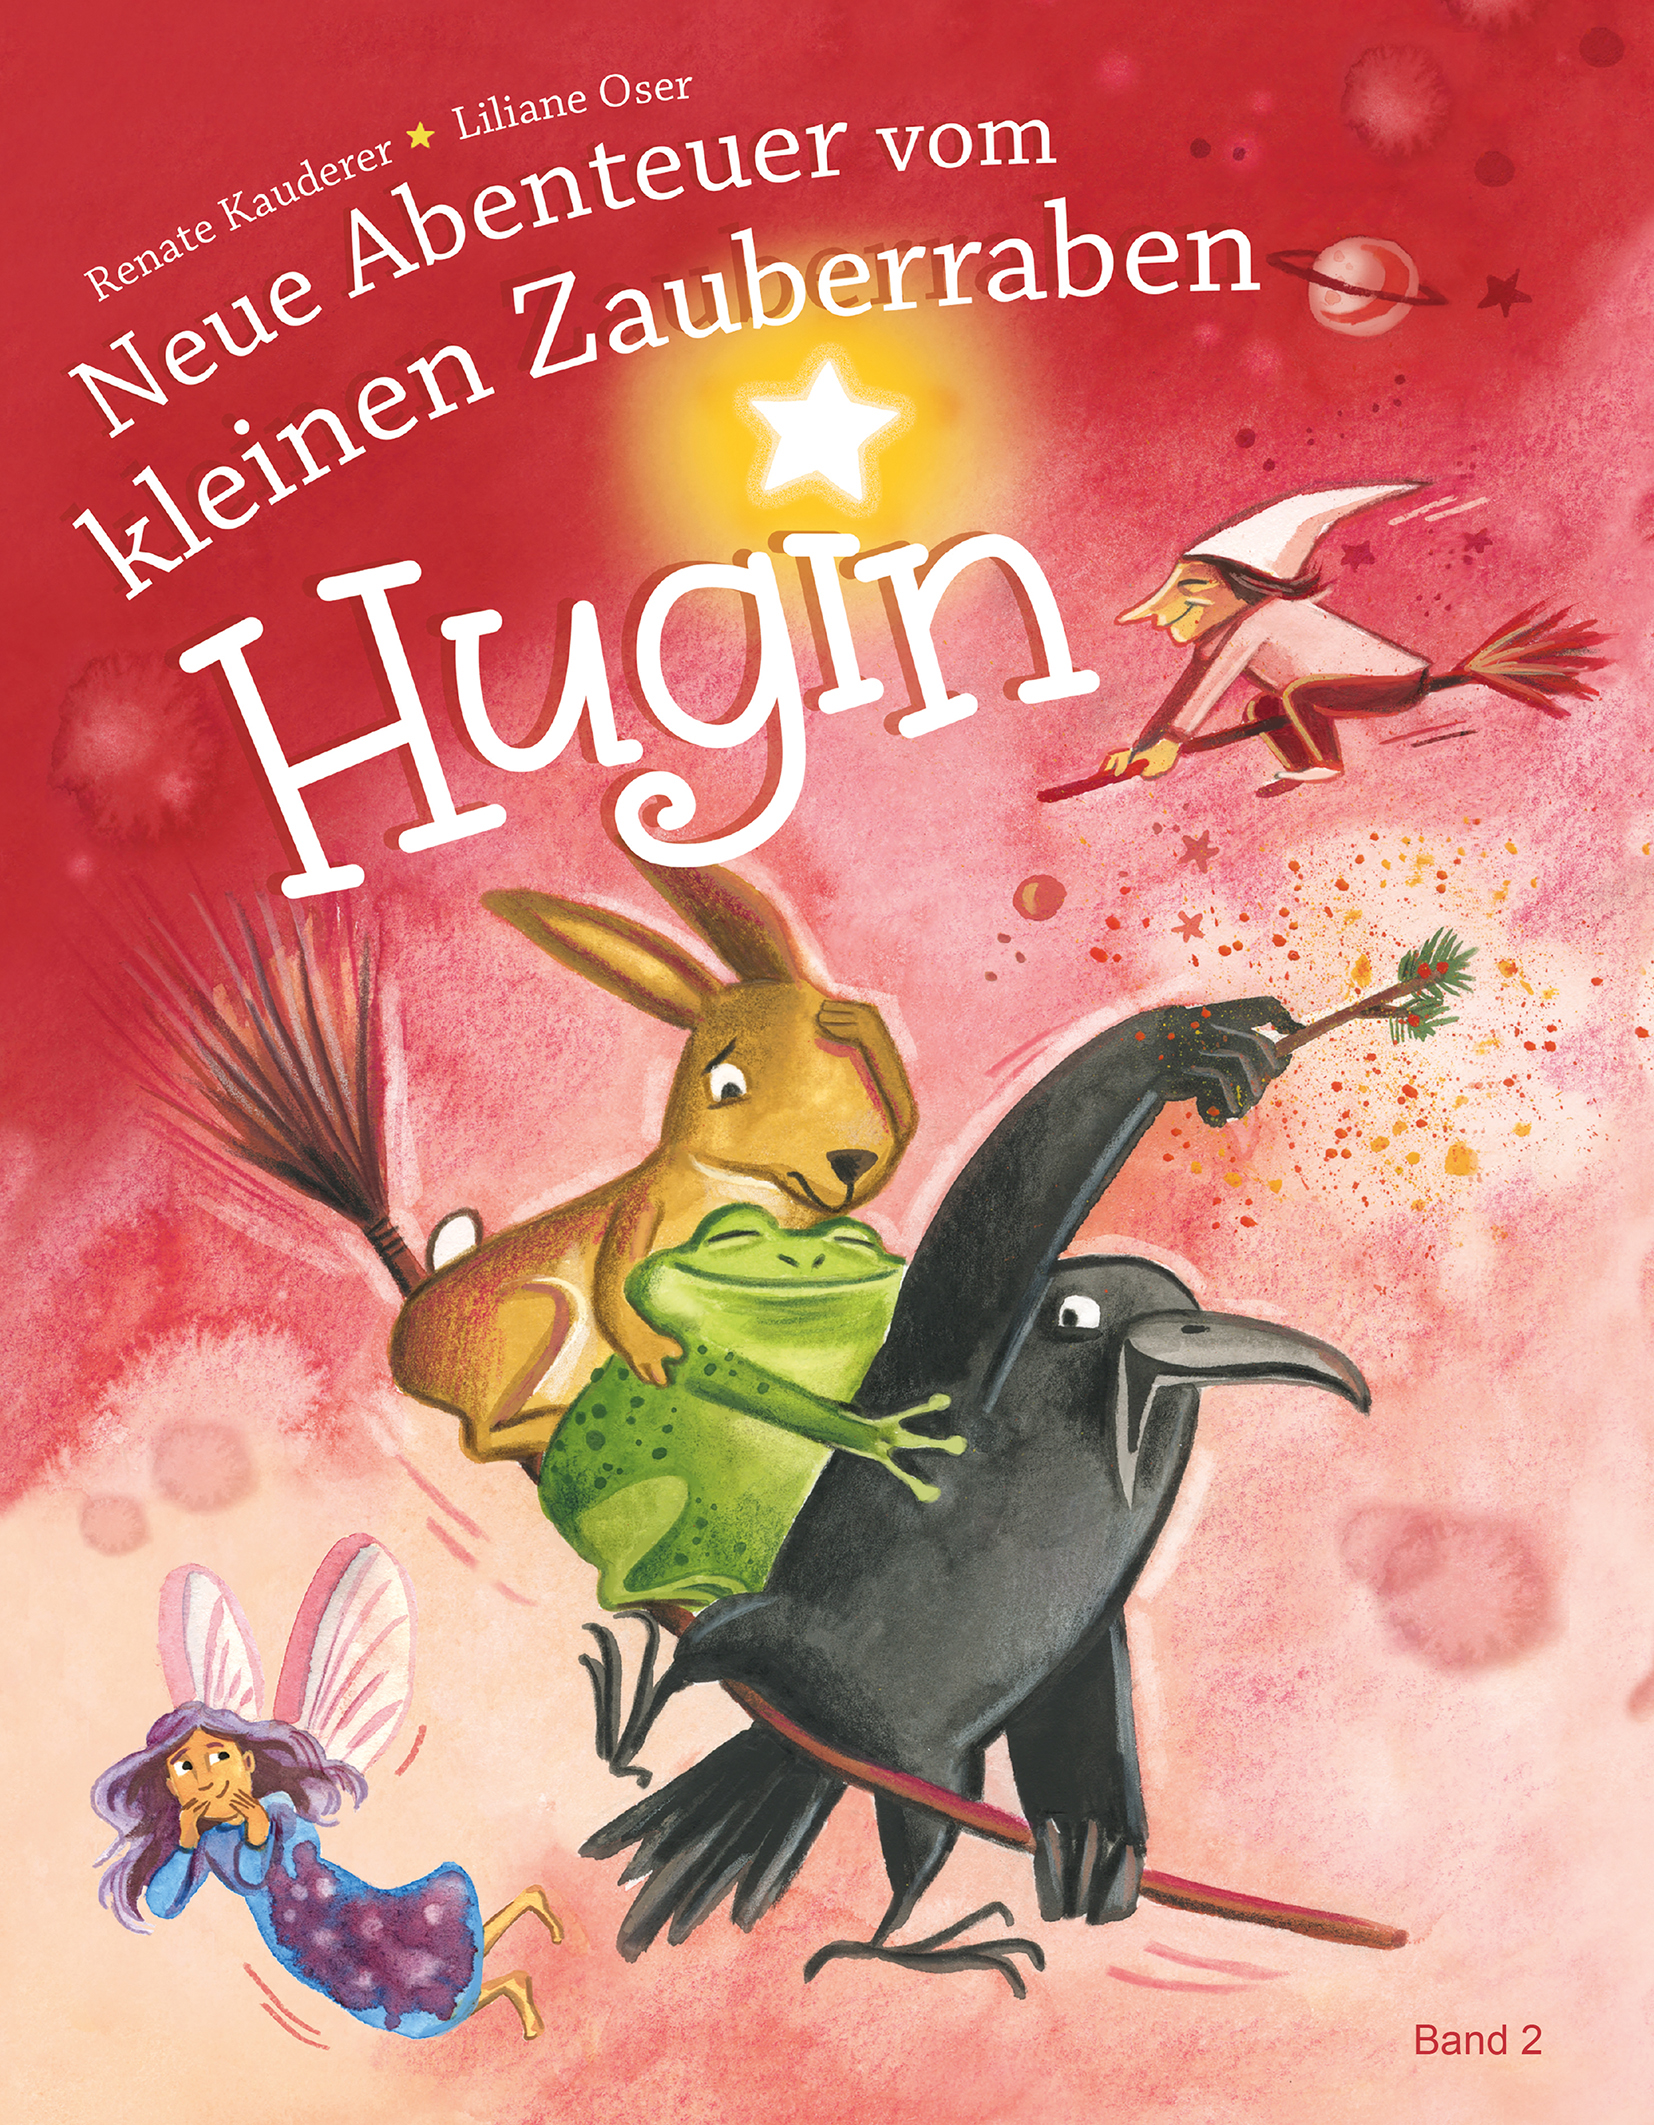 Neue Abenteuer vom kleinen Zauberraben Hugin Bd.2